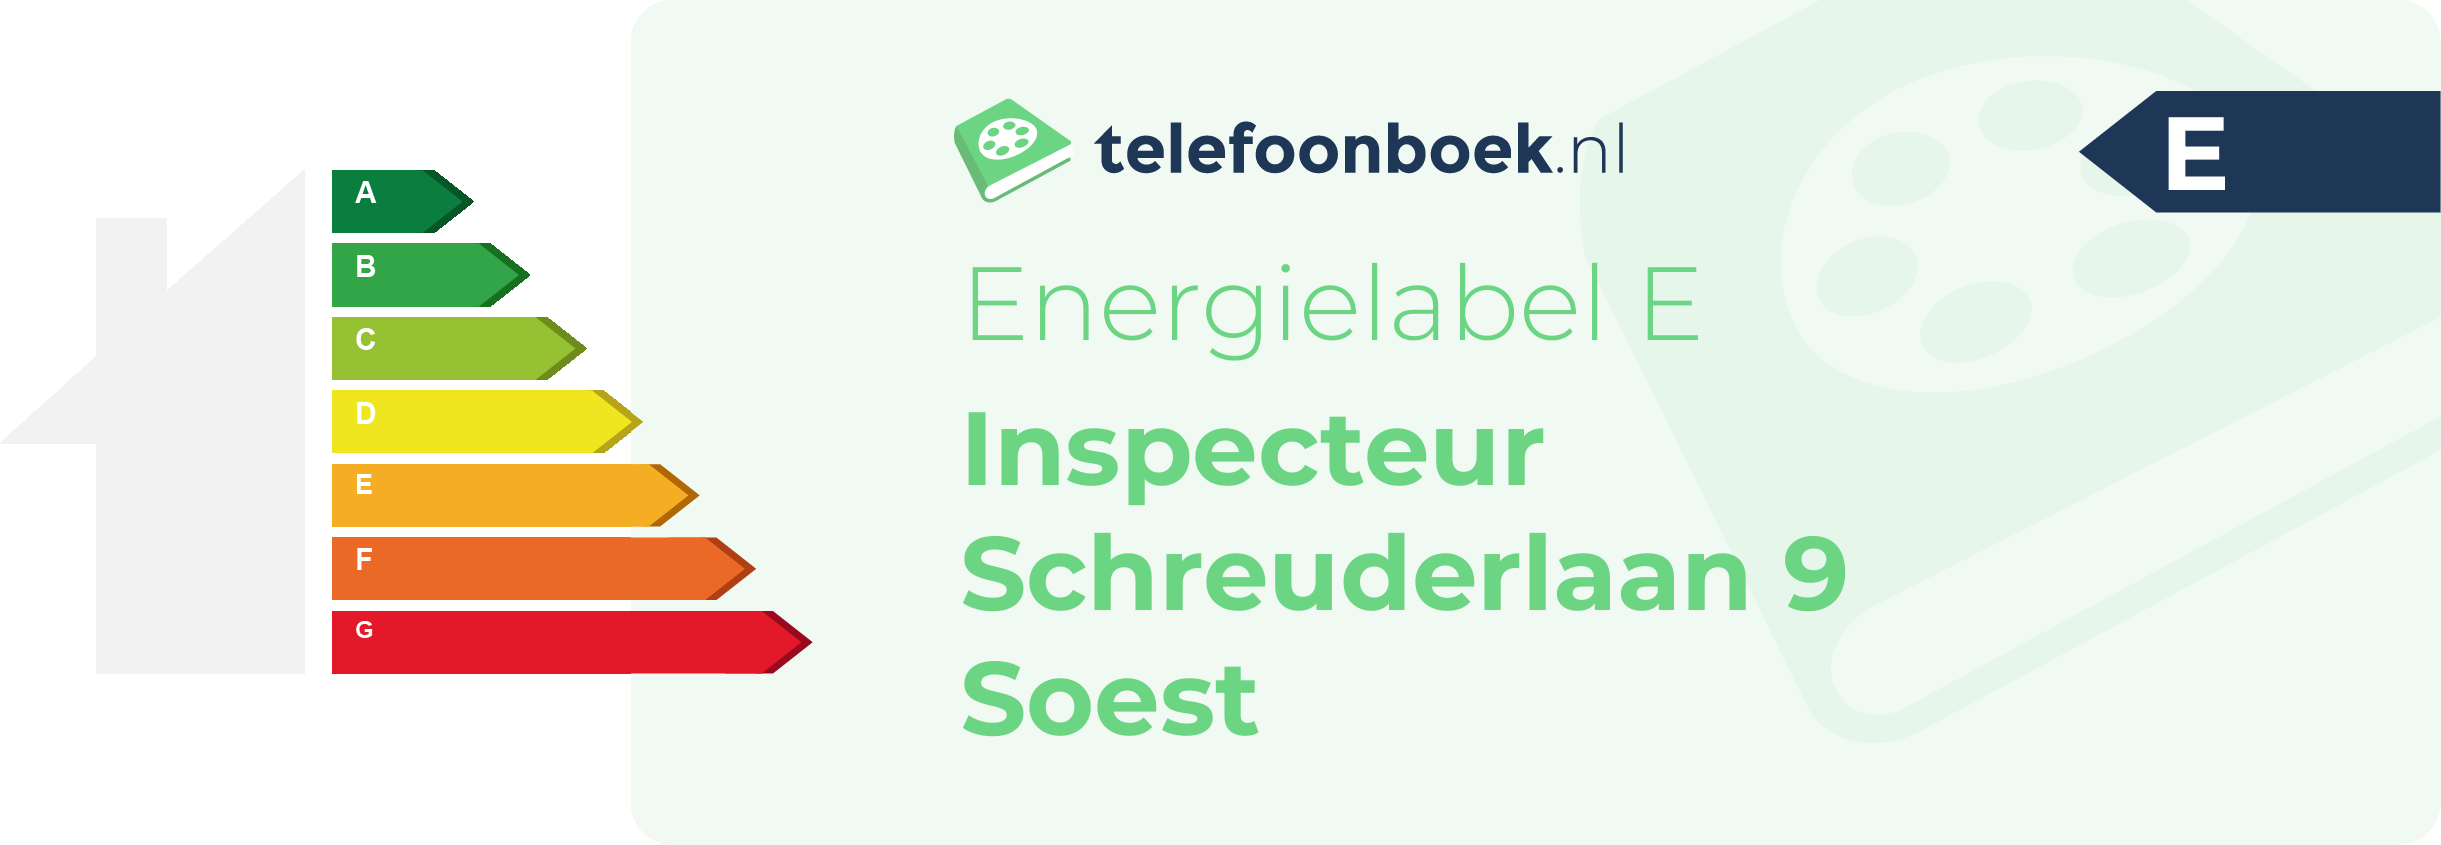 Energielabel Inspecteur Schreuderlaan 9 Soest